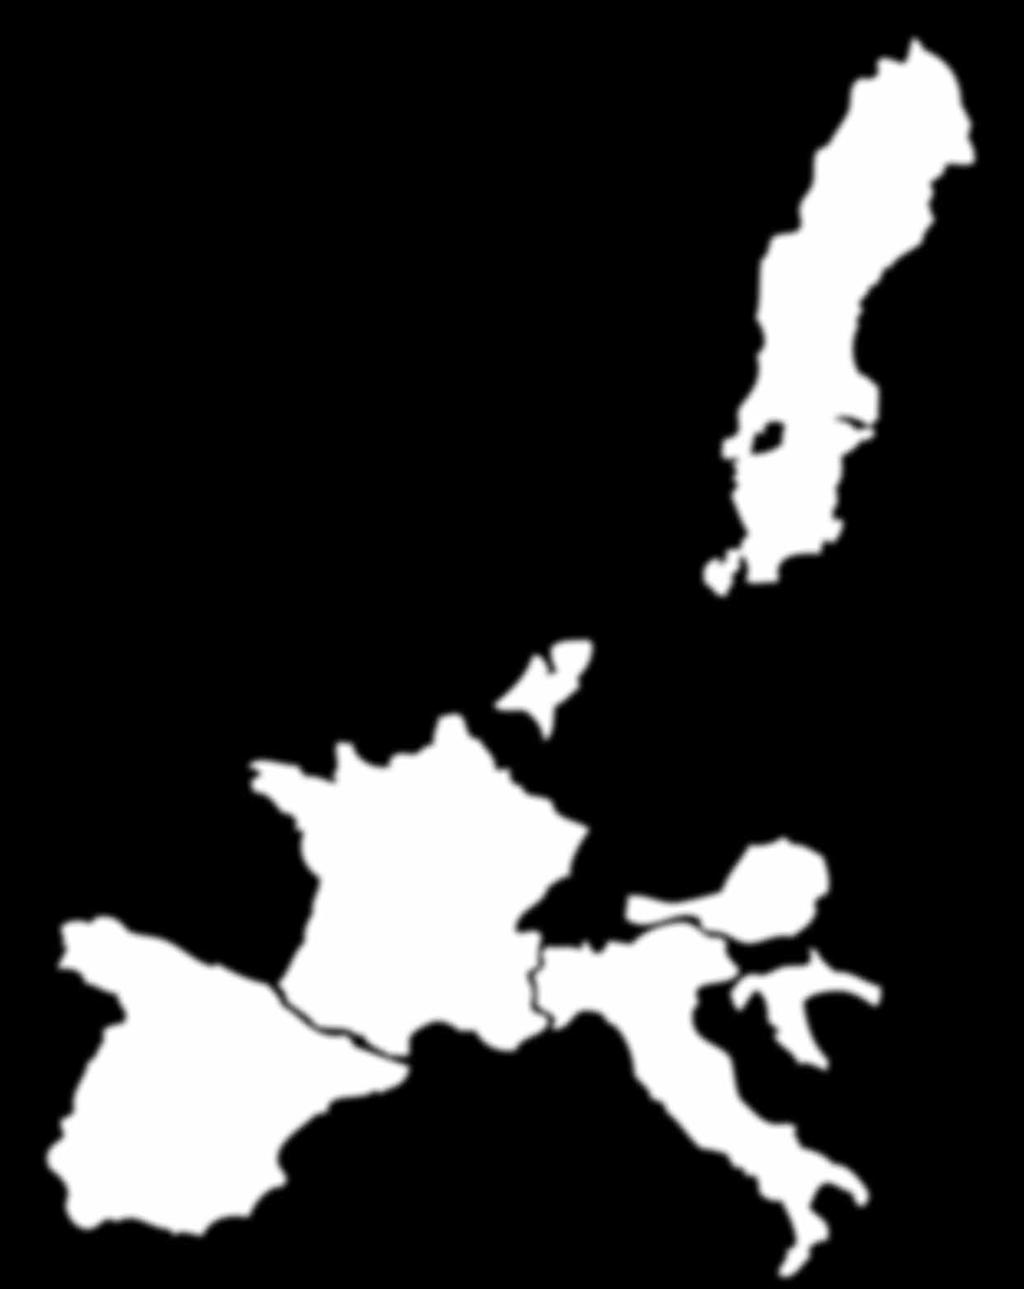 Die Häuser befinden sich auf der niederländischen Insel Ameland, in den Wäldern Südschwedens, in den Bergen Österreichs, an der spanischen oder istrischen Küste sowie in den europäischen